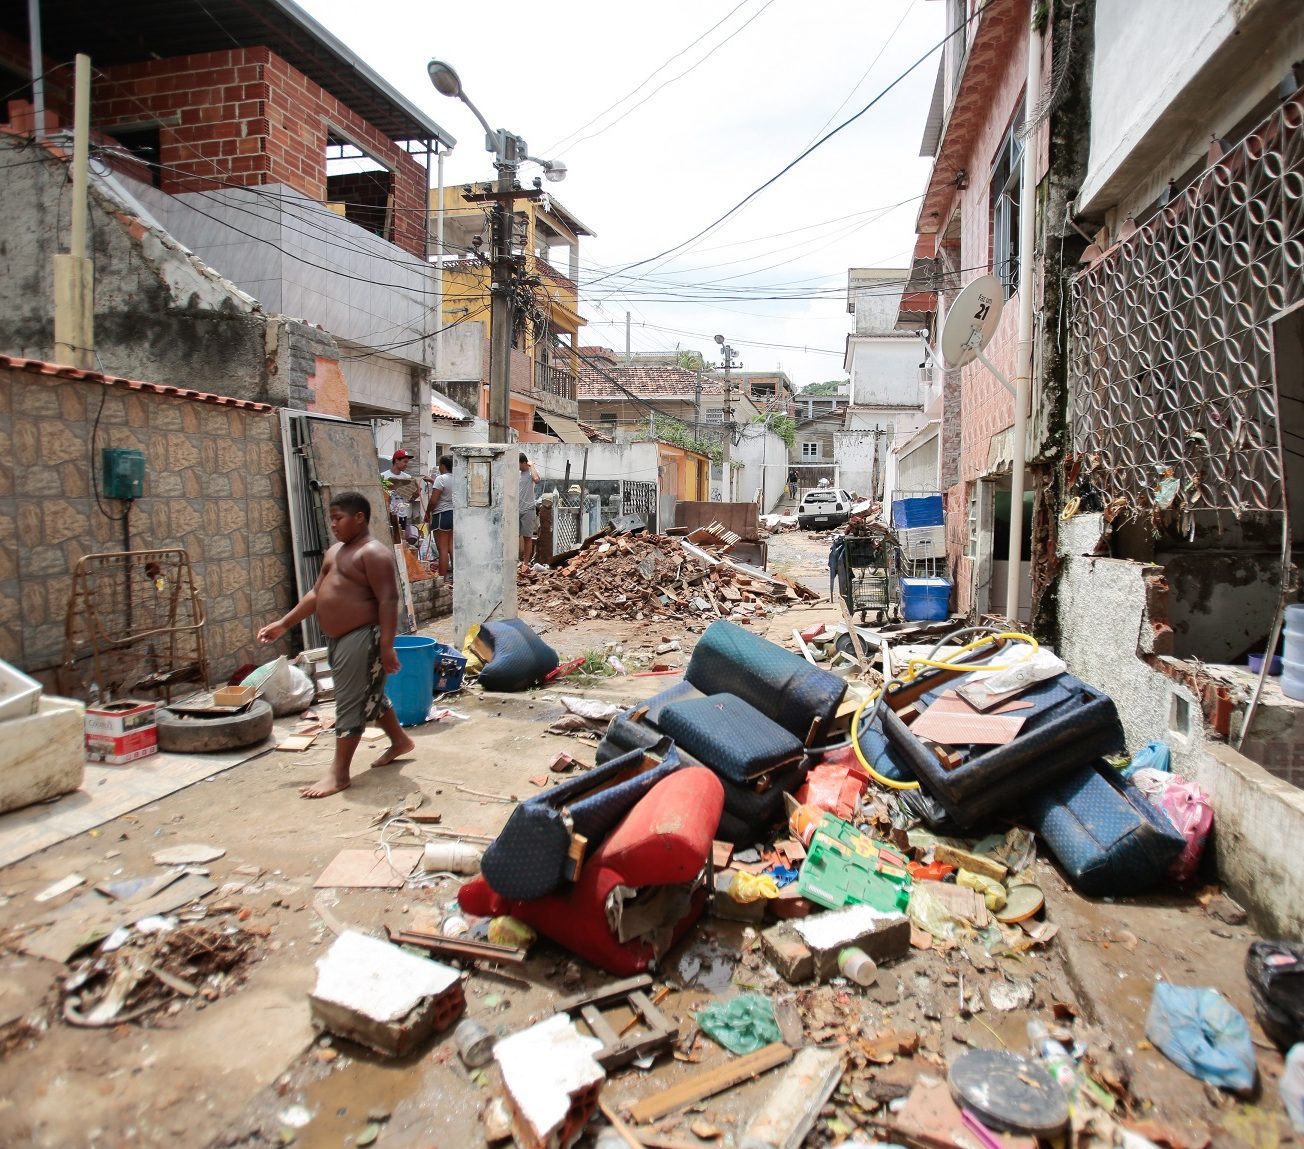 O lixo deixado pelo temporal que destruiu três vilas em Cascadura. Foto Brenno Carvalho /Agência O Globo.